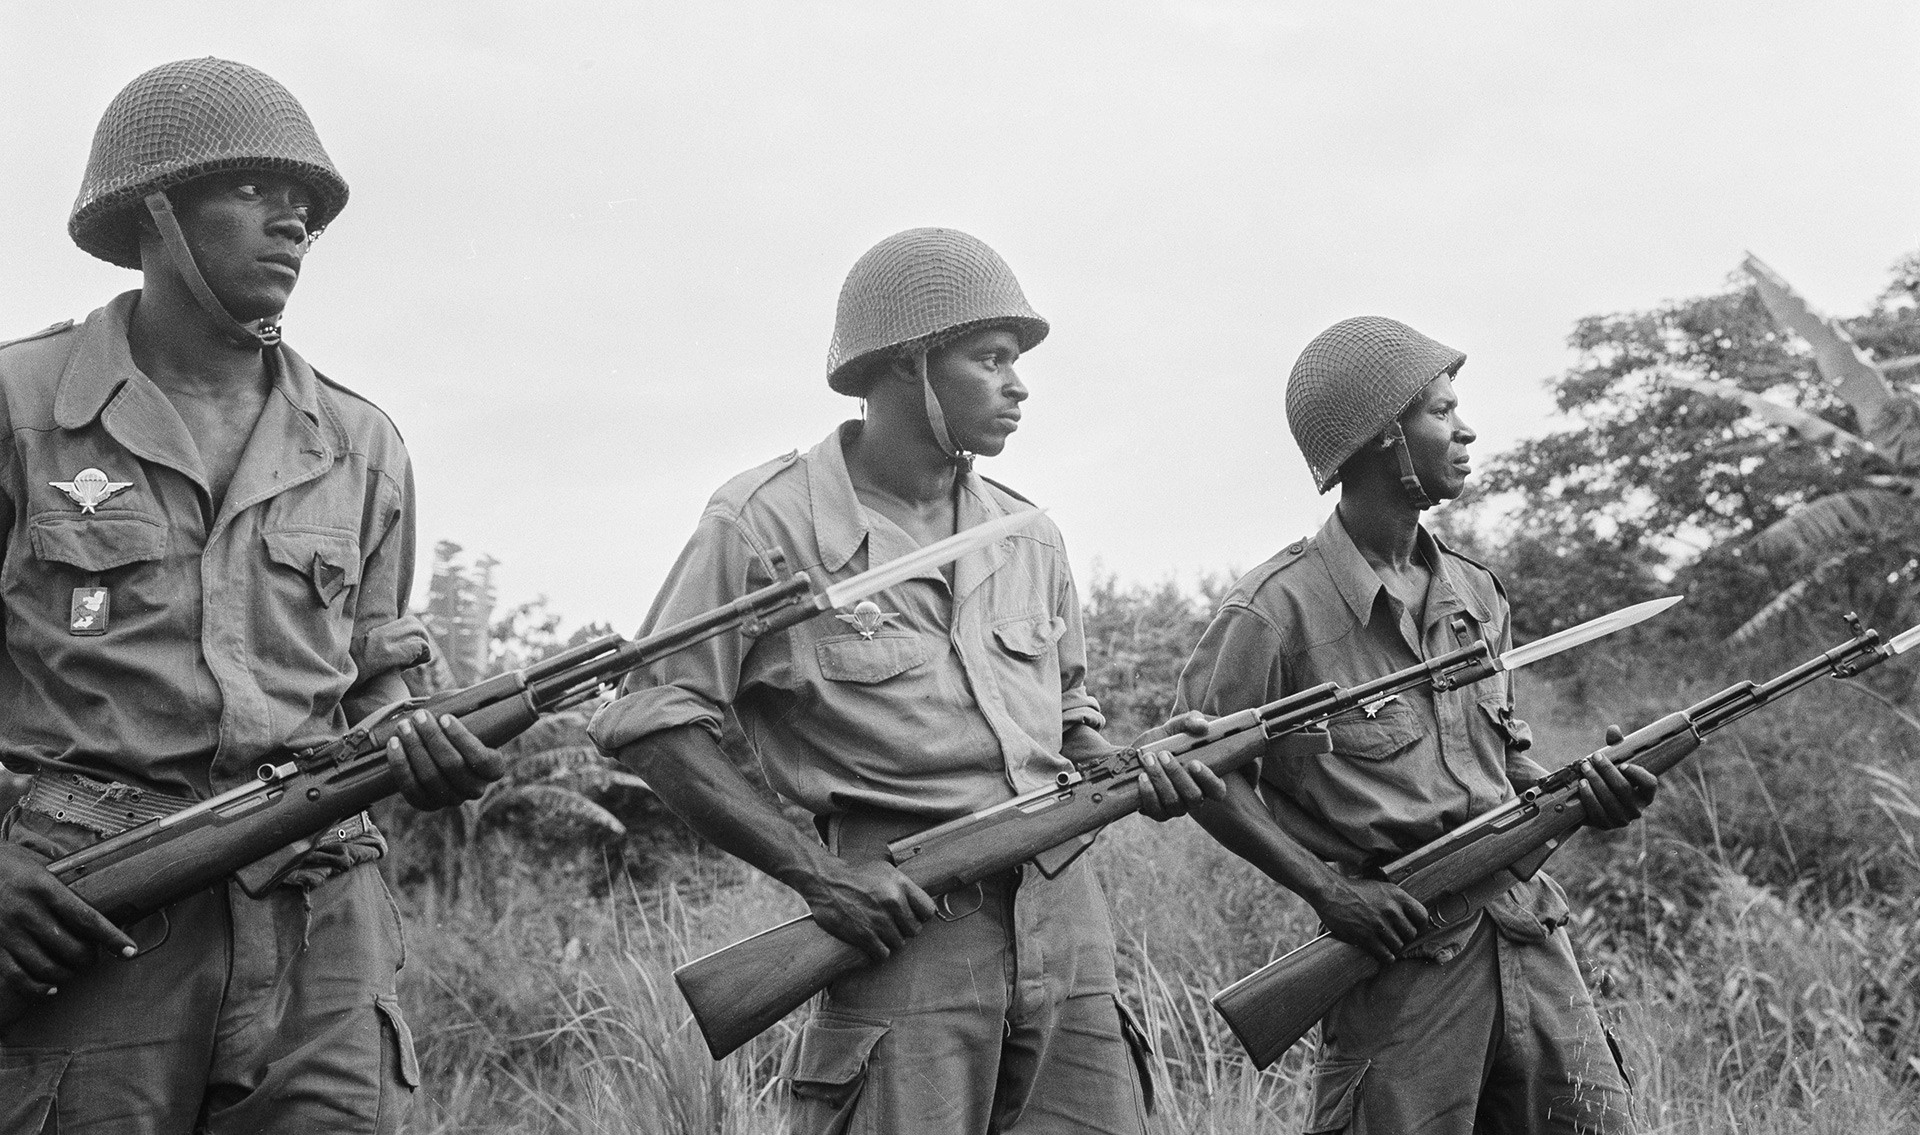 Војници народне армије Републике Конго.